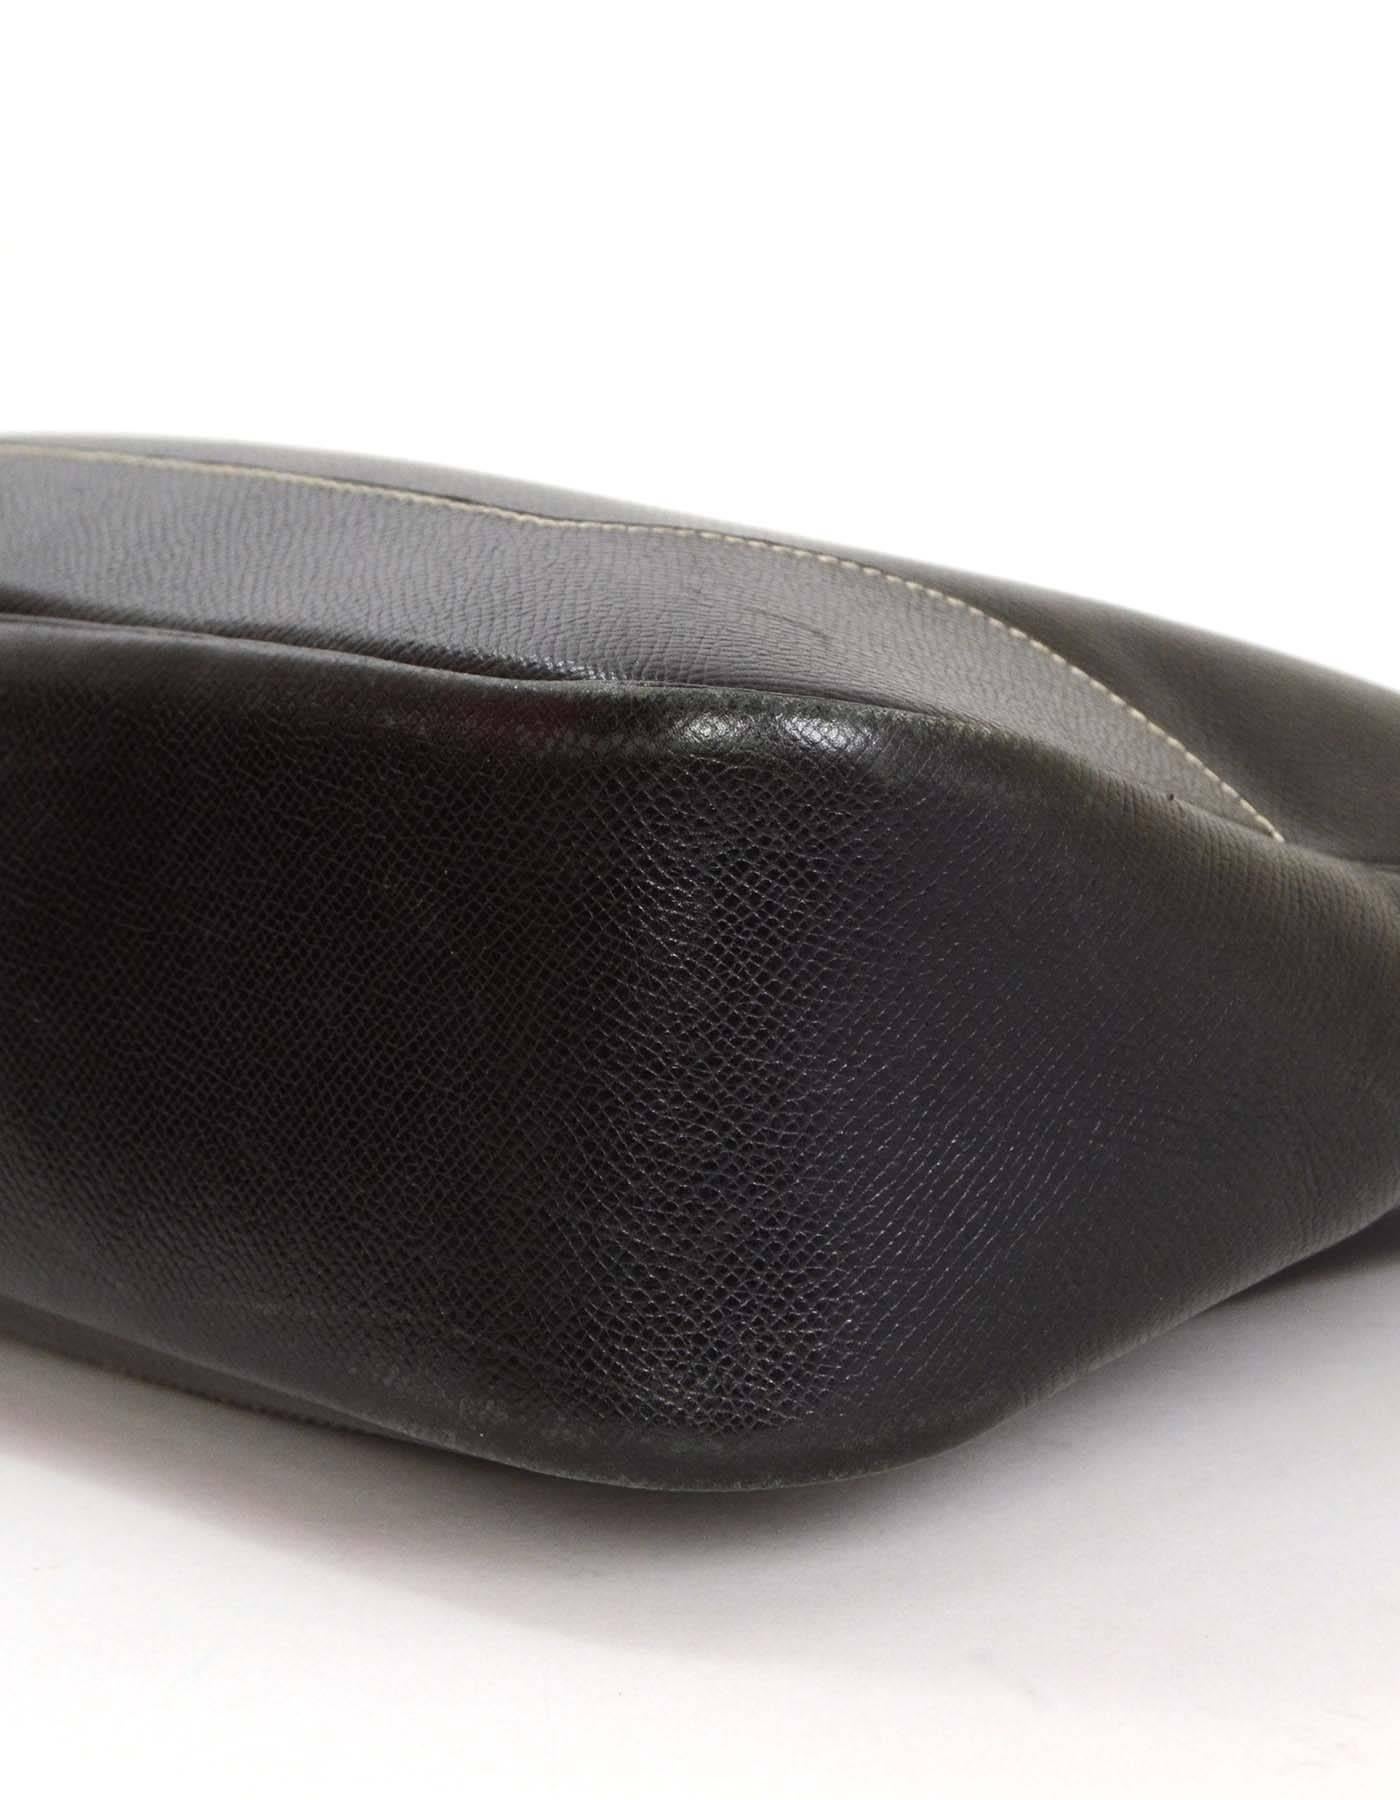 Hermes Black Epsom Leather 31cm Trim Shoulder Bag PHW 1